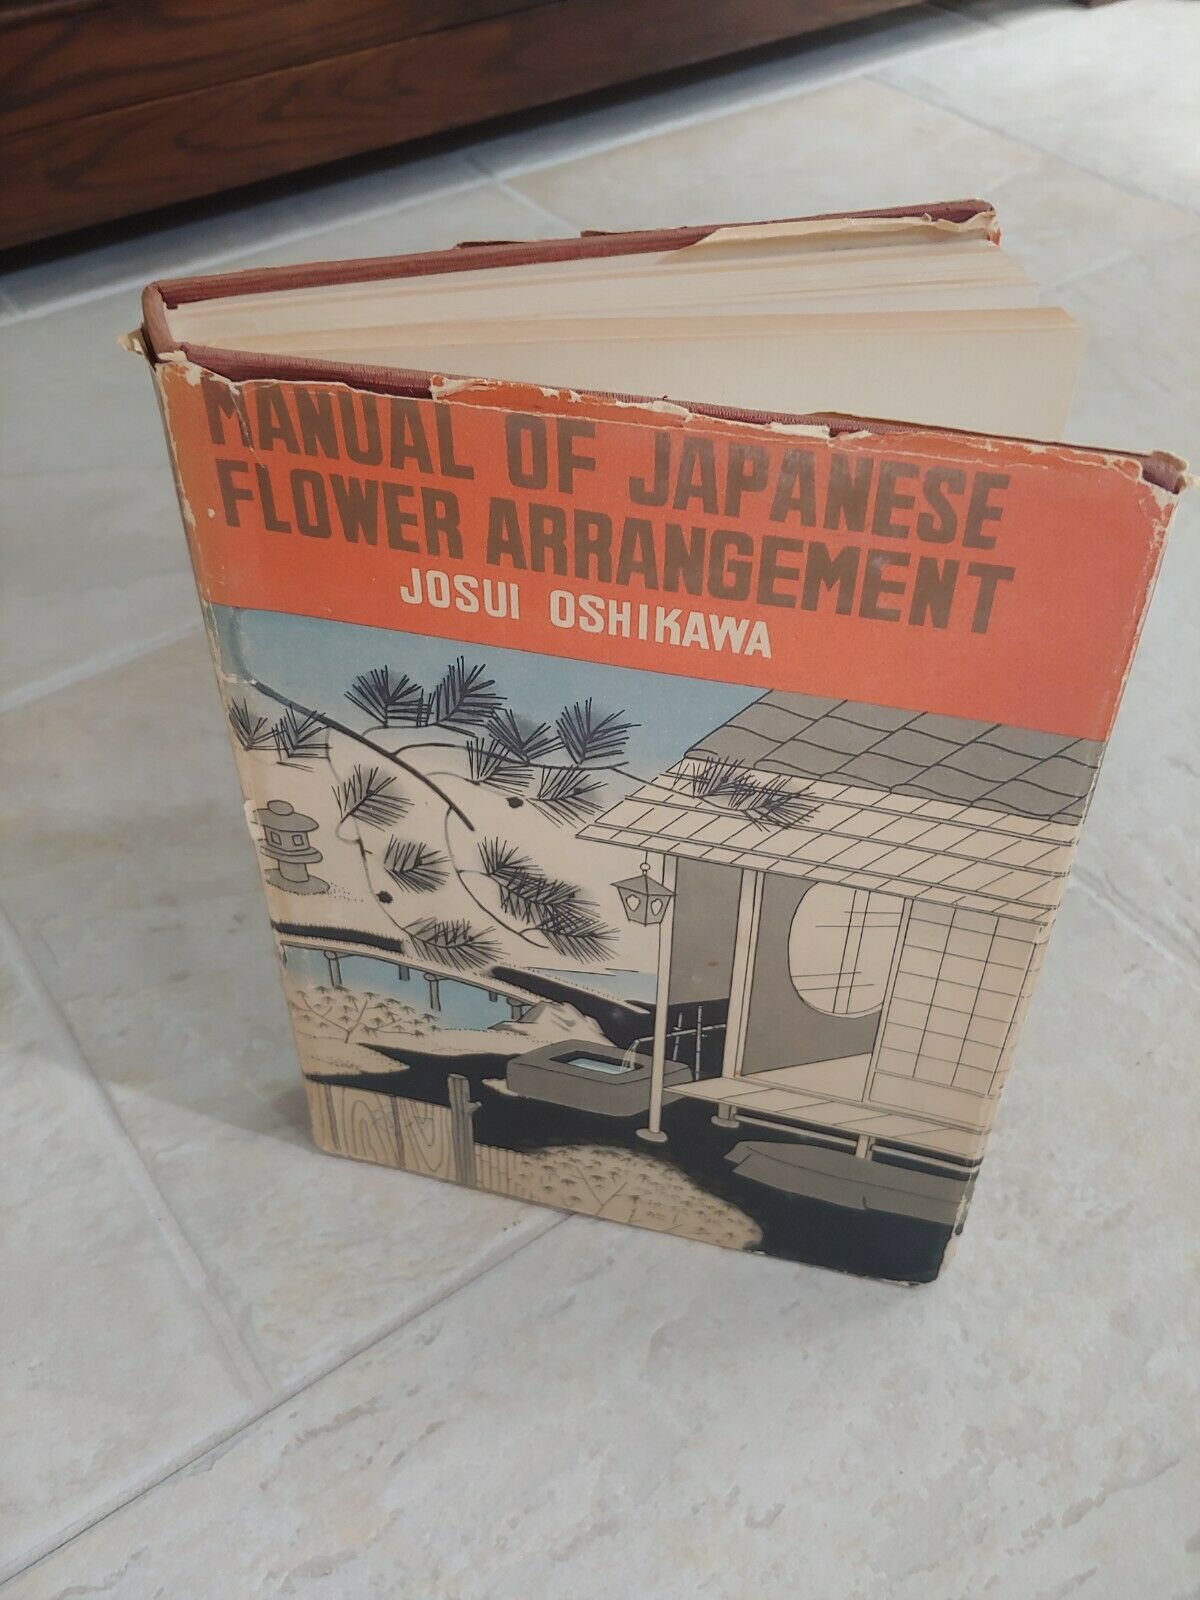 Manual Of Japanese Flower Arrangement By Josui Oshikawa, 1959